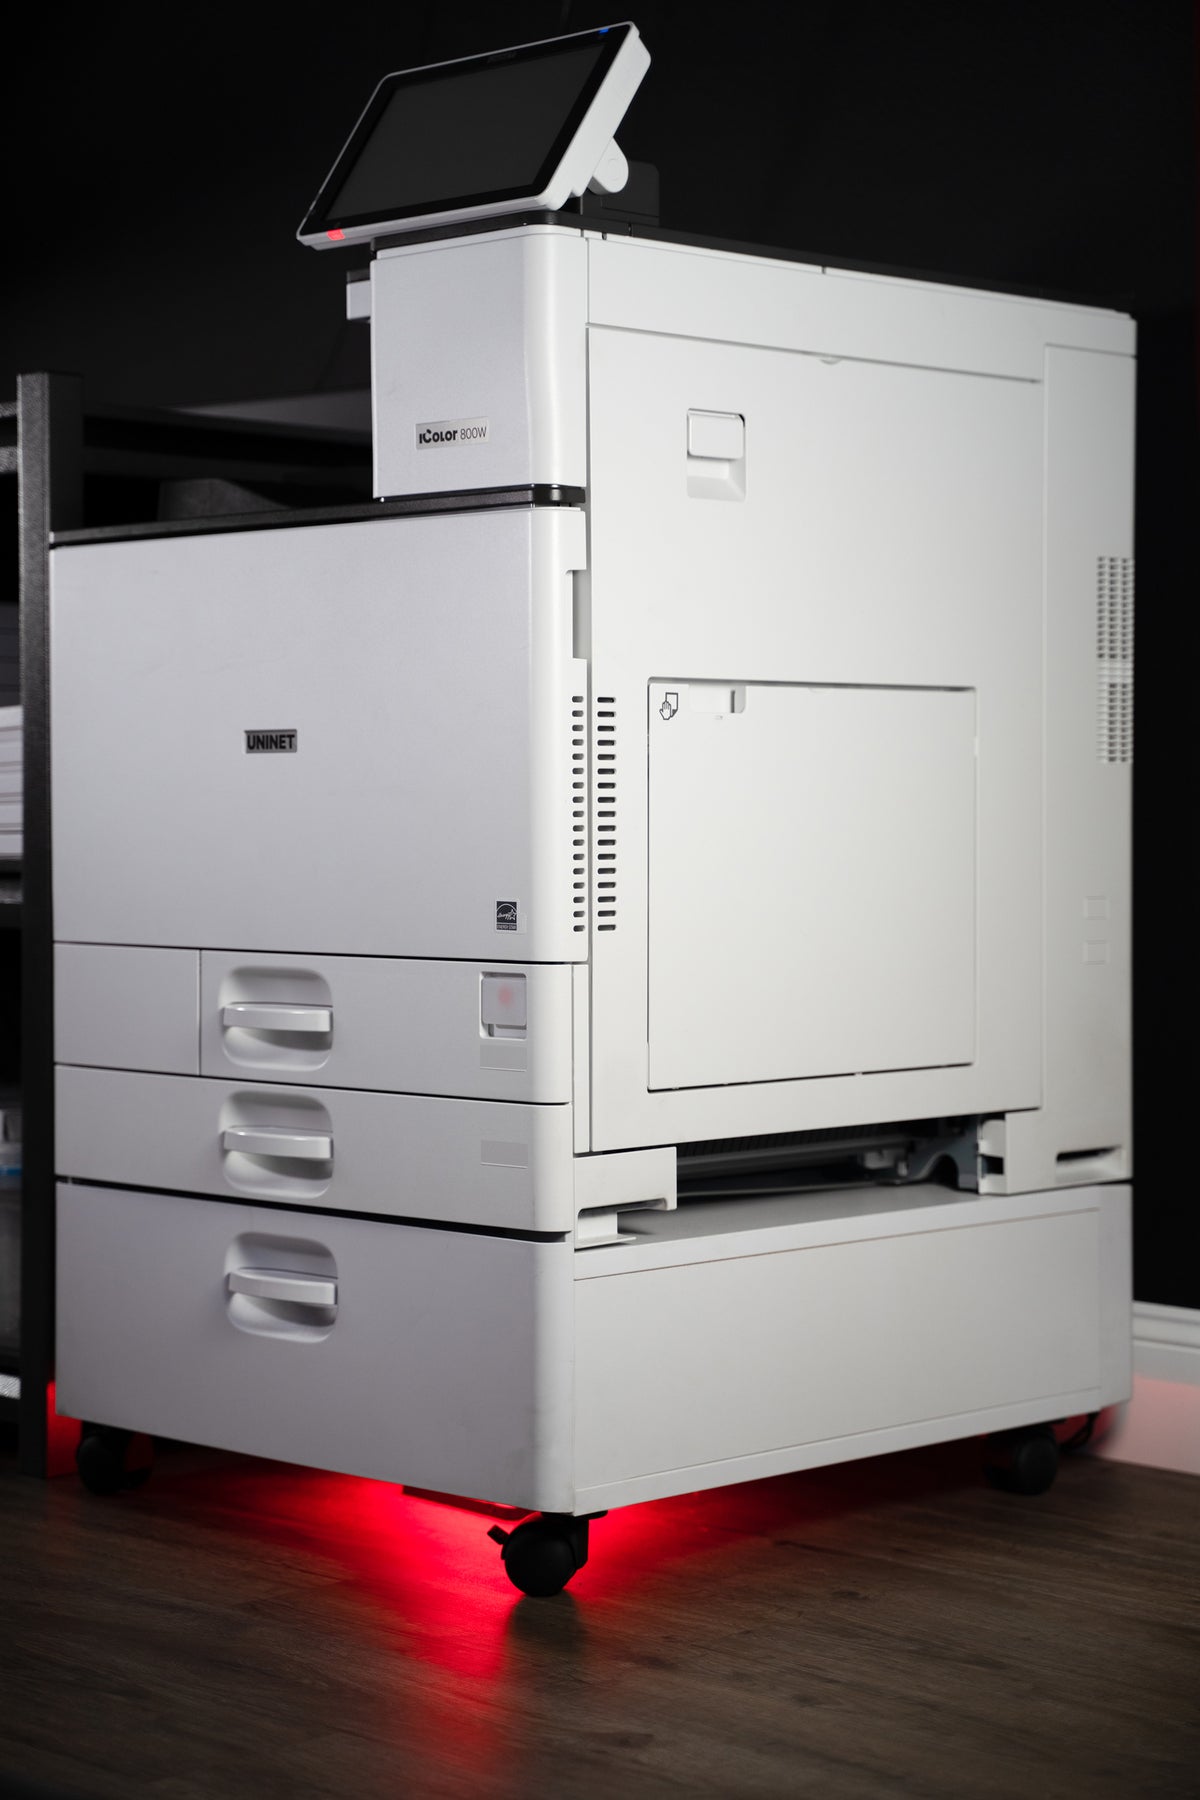 IColor 800W White Toner Transfer Printer - Elite Package